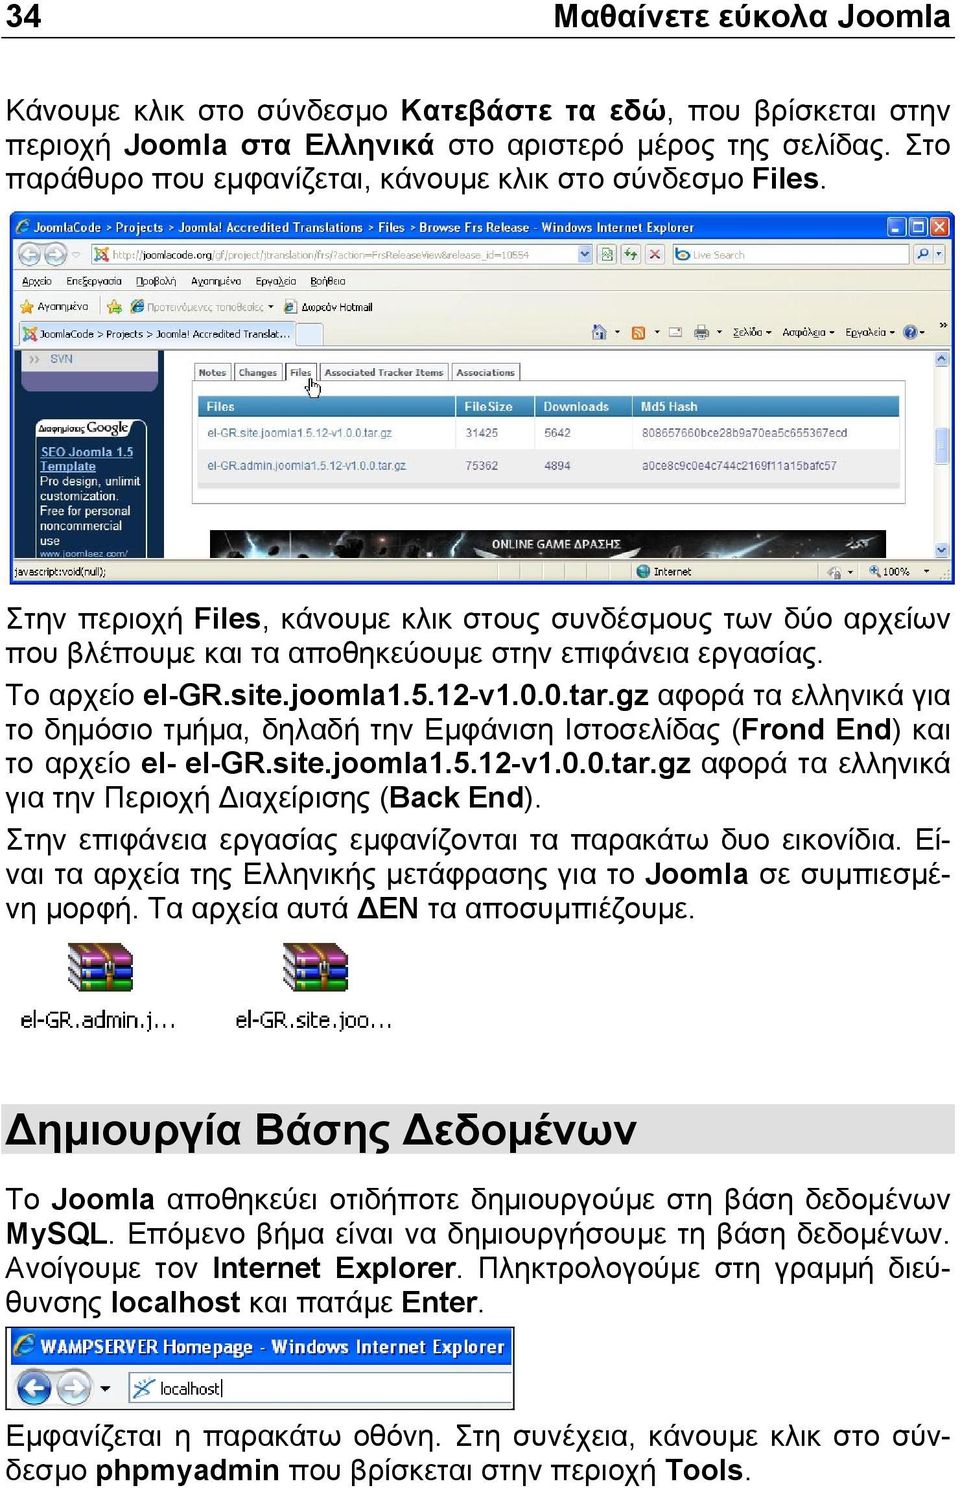 Το αρχείο el-gr.site.joomla1.5.12-v1.0.0.tar.gz αφορά τα ελληνικά για το δηµόσιο τµήµα, δηλαδή την Εµφάνιση Ιστοσελίδας (Frond End) και το αρχείο el- el-gr.site.joomla1.5.12-v1.0.0.tar.gz αφορά τα ελληνικά για την Περιοχή ιαχείρισης (Back End).